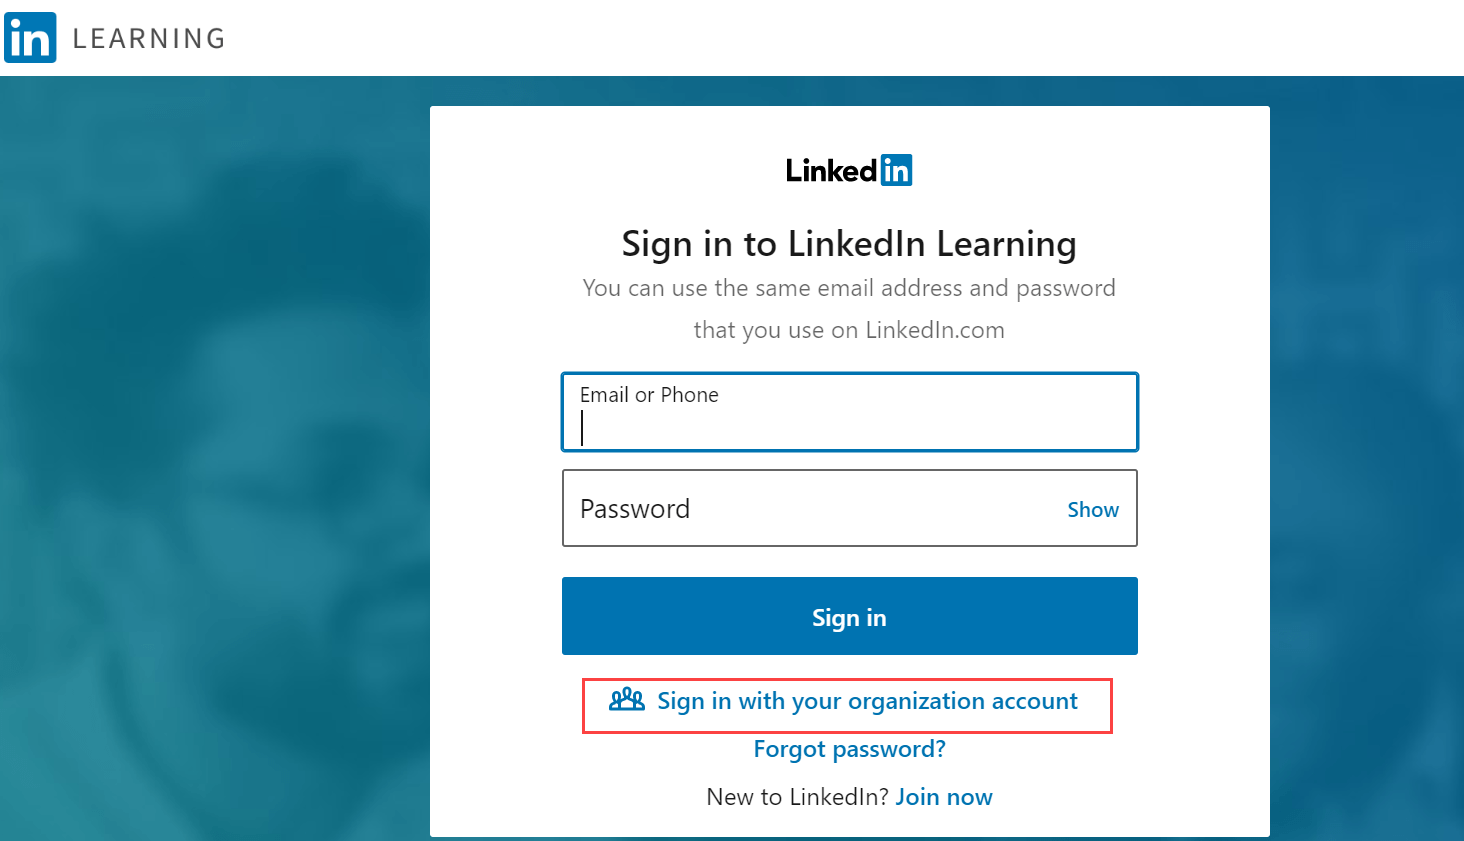 LinkedIn: Log In or Sign Up